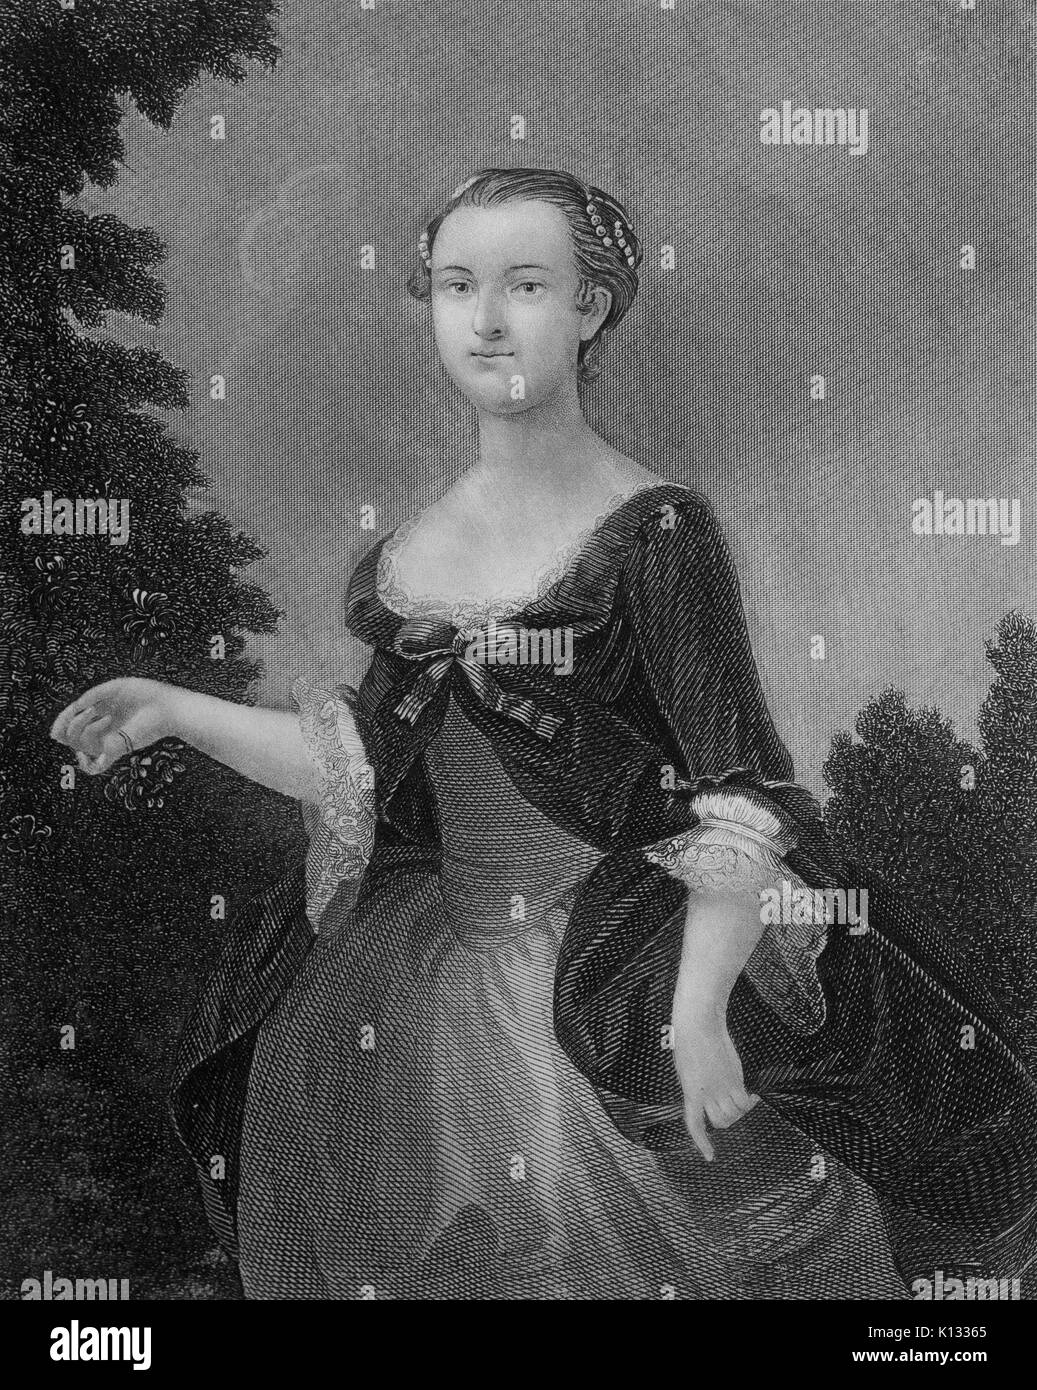 Martha Washington, première dame et épouse de George Washington, le premier président des États-Unis, de l'acier coupé gravure de Martha Washington comme une jeune femme, avec une robe fluide, à l'extérieur, avec des arbres en arrière-plan, le port d'un bonnet, 1800. Banque D'Images